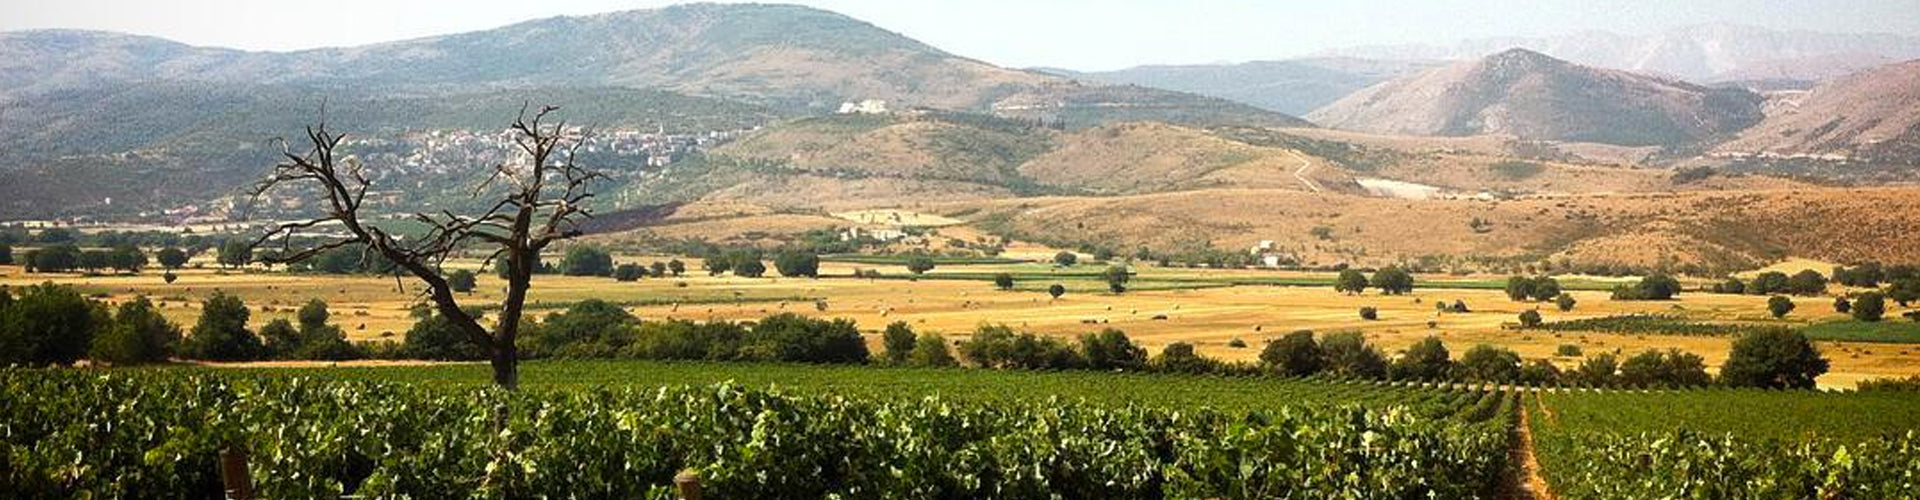 Masciarelli Vineyards in Ofena, Abruzzo - Italy